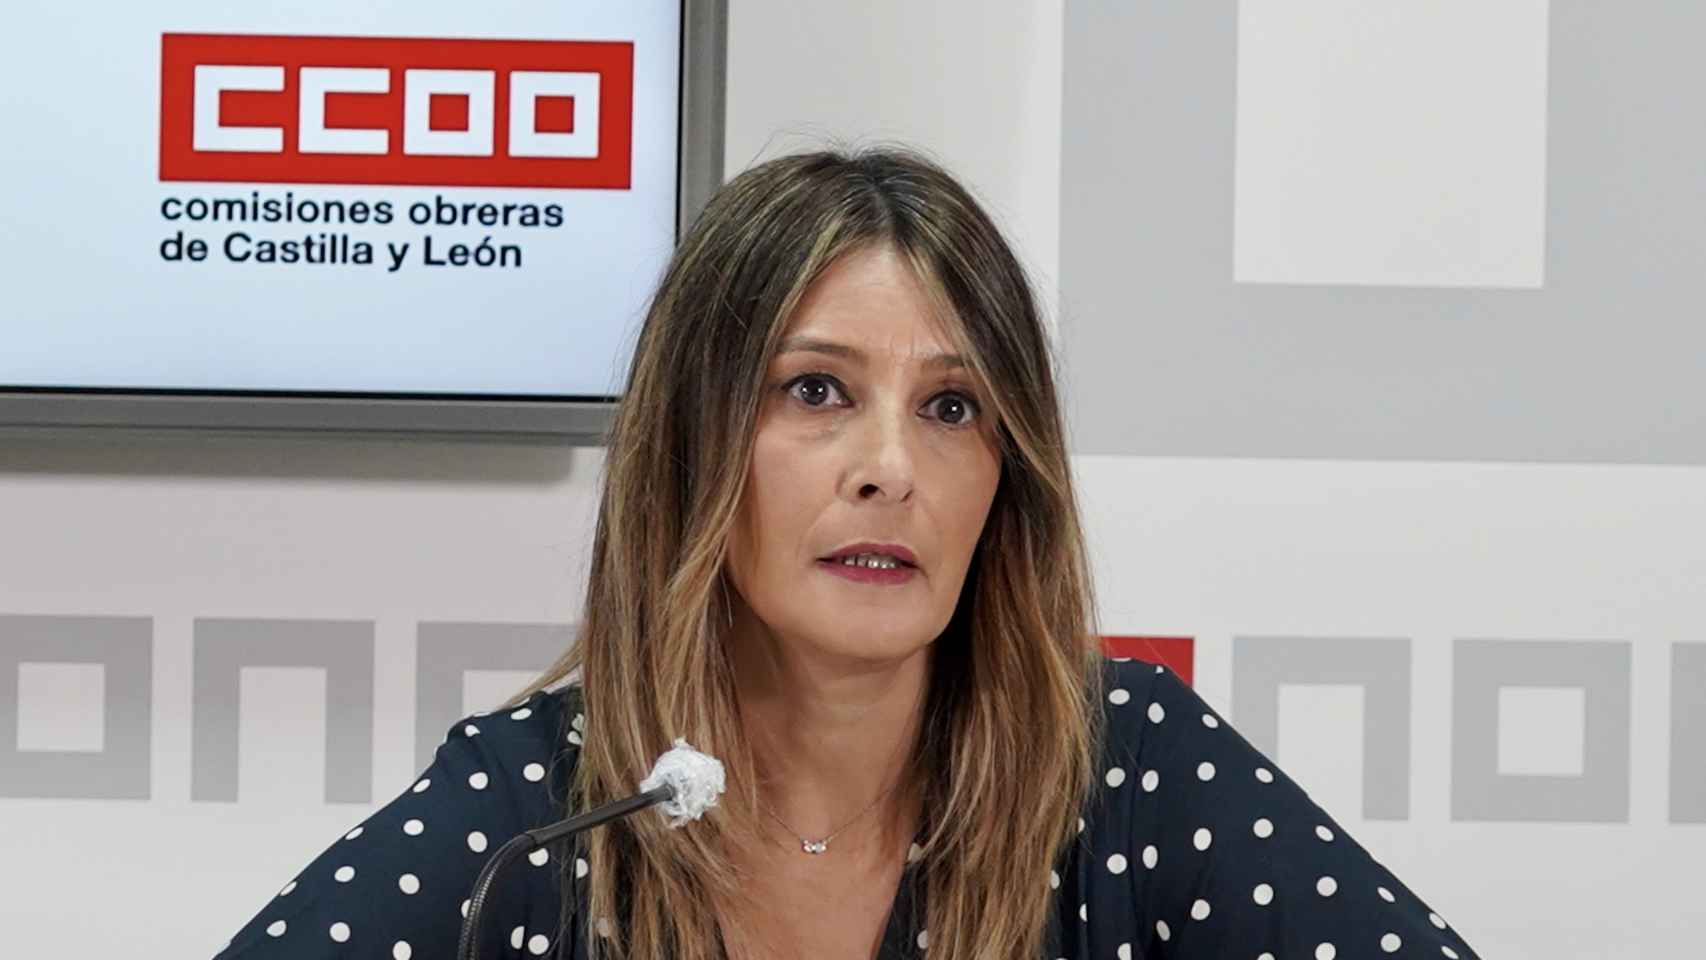 La Secretaria de Mujer y Políticas de Igualdad en CC.OO, Yolanda Martín